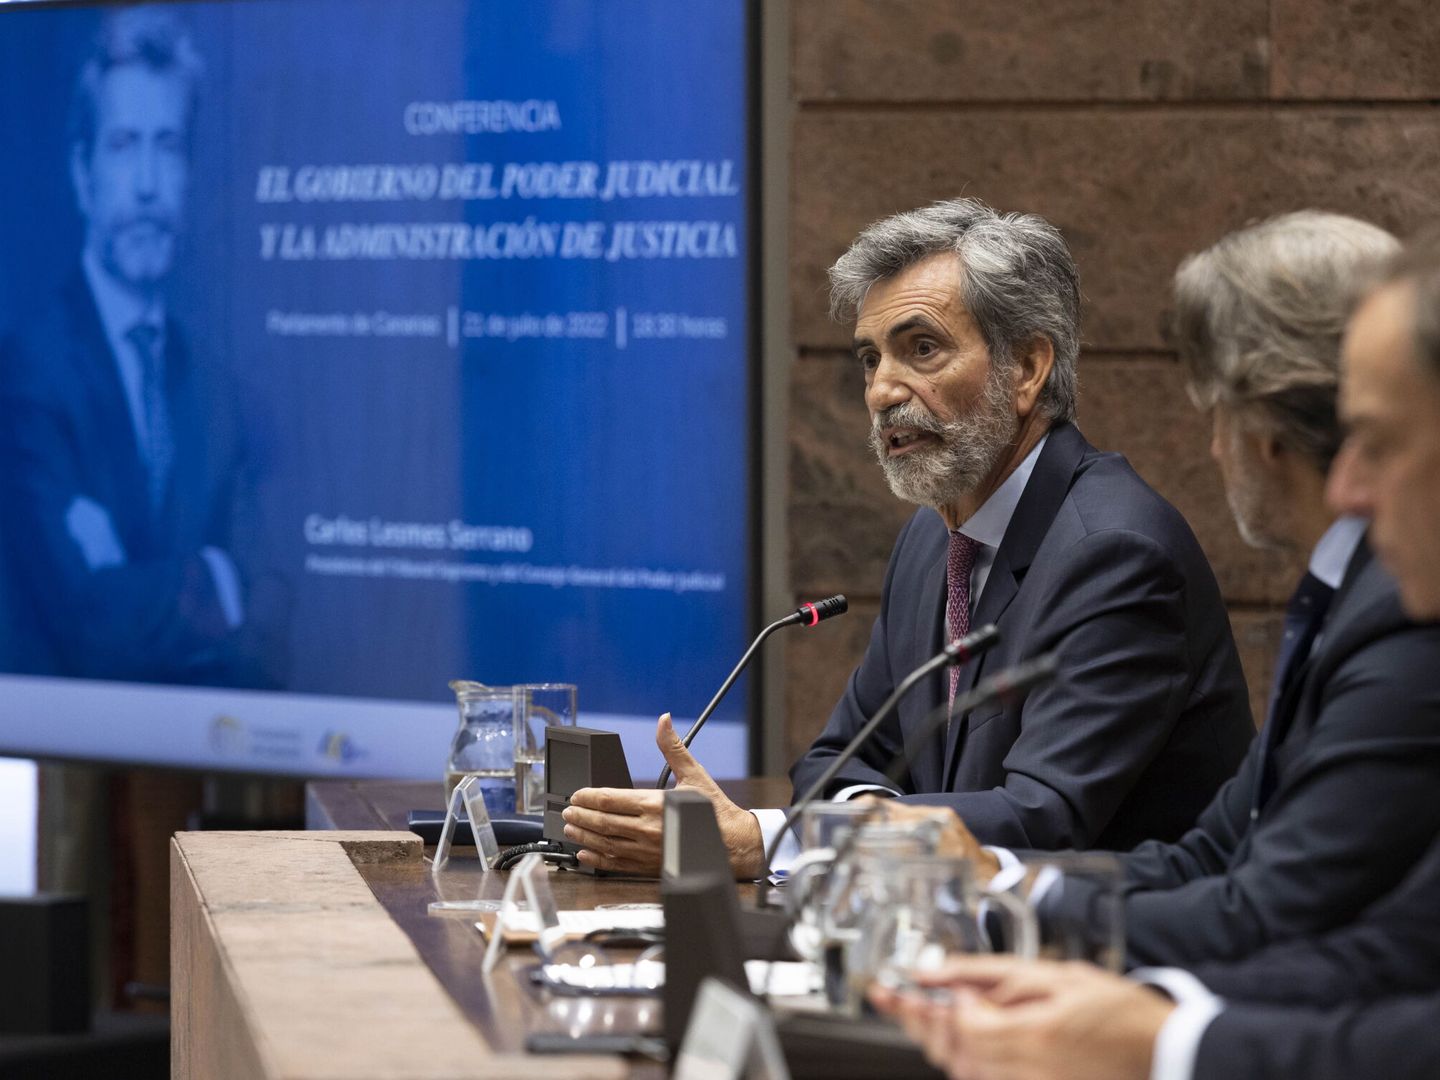 El presidente del Supremo y del CGPJ, Carlos Lesmes, durante su participación en la conferencia 'El gobierno del Poder Judicial y la Administración de Justicia', en la sede del Parlamento de Canarias, en Santa Cruz de Tenerife. (EFE/Miguel Barreto)